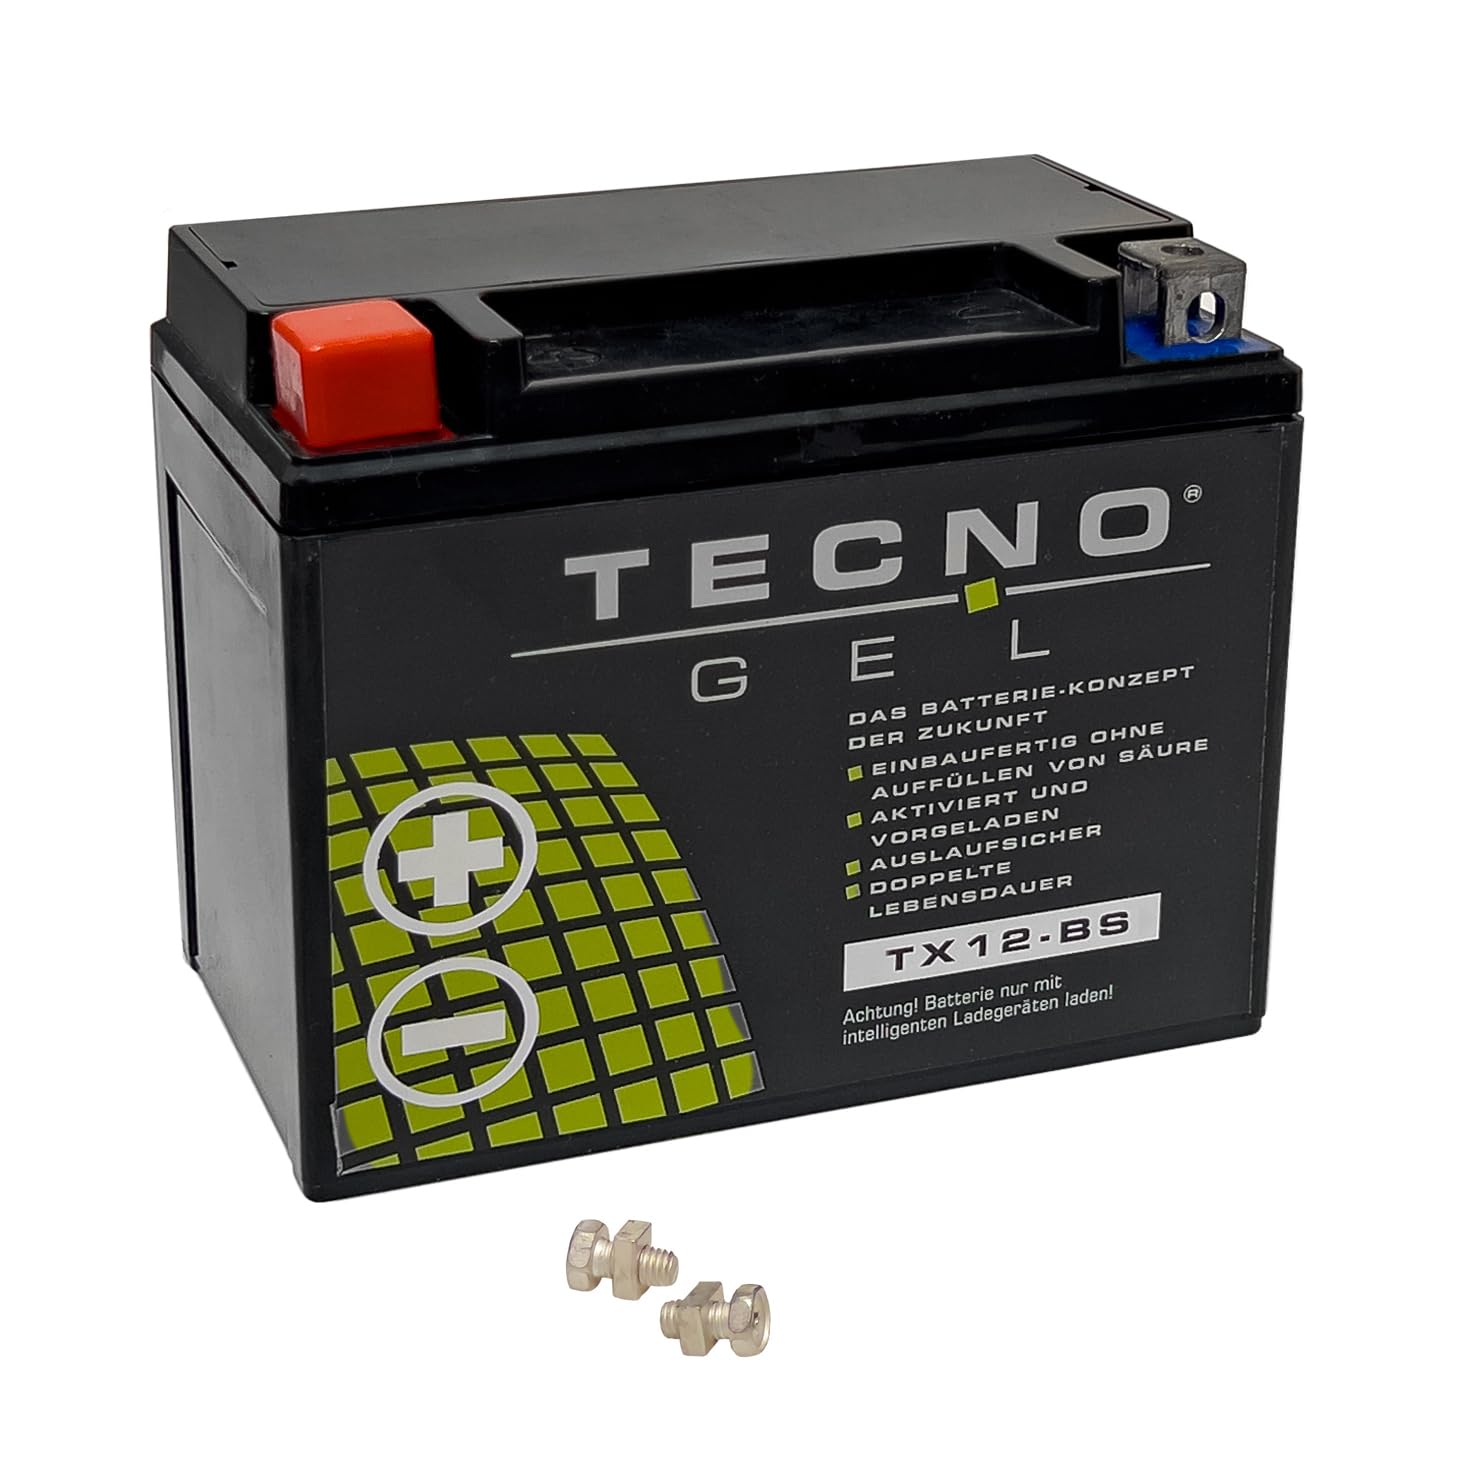 TECNO-GEL Motorrad-Batterie für YTX12-BS, 12V Gel-Batterie 12Ah (DIN 51012), 151x87x130 mm für Peugeot, Piaggio, Polaris, Suzuki u.a. von TECNO-GEL